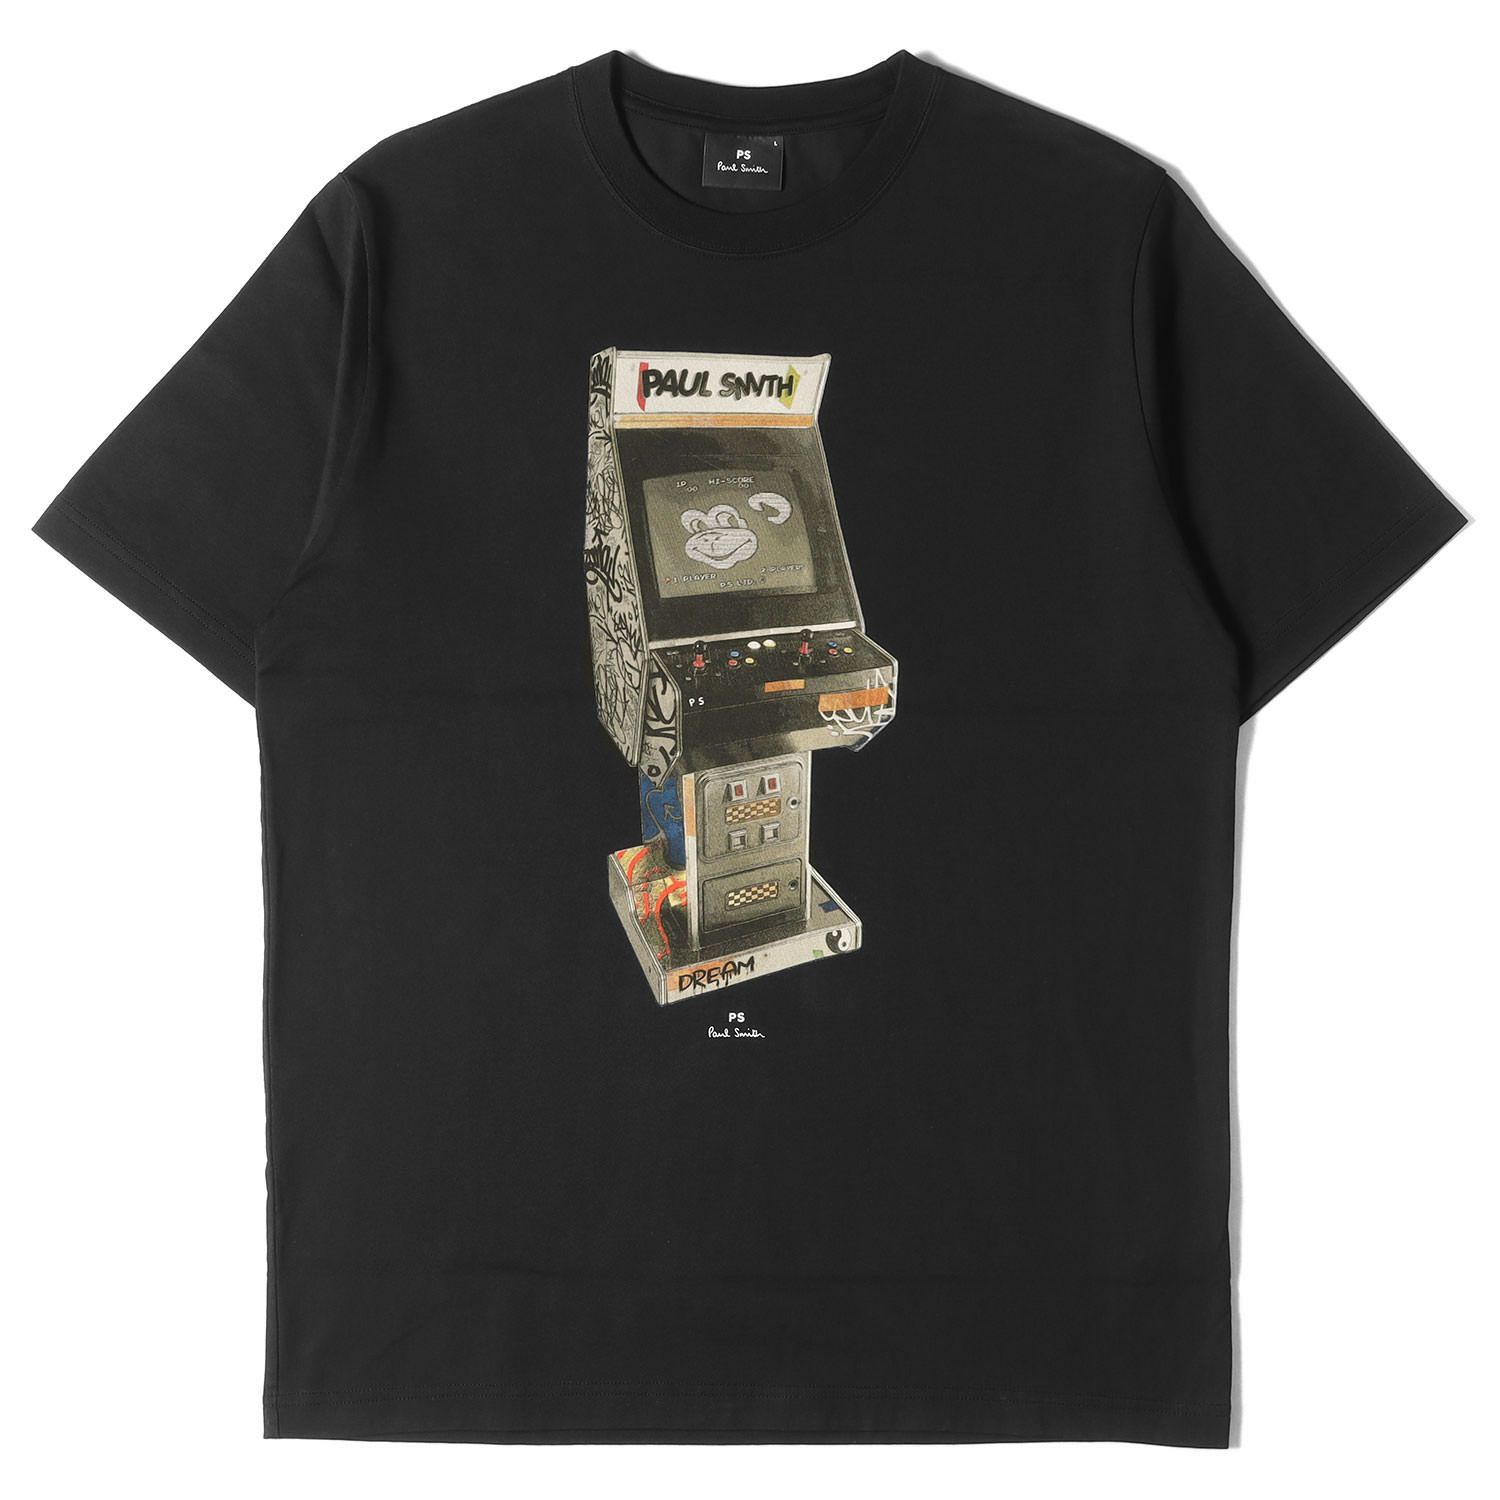 Paul Smith ポールスミス Tシャツ サイズ:L Arcade Game グラフィック